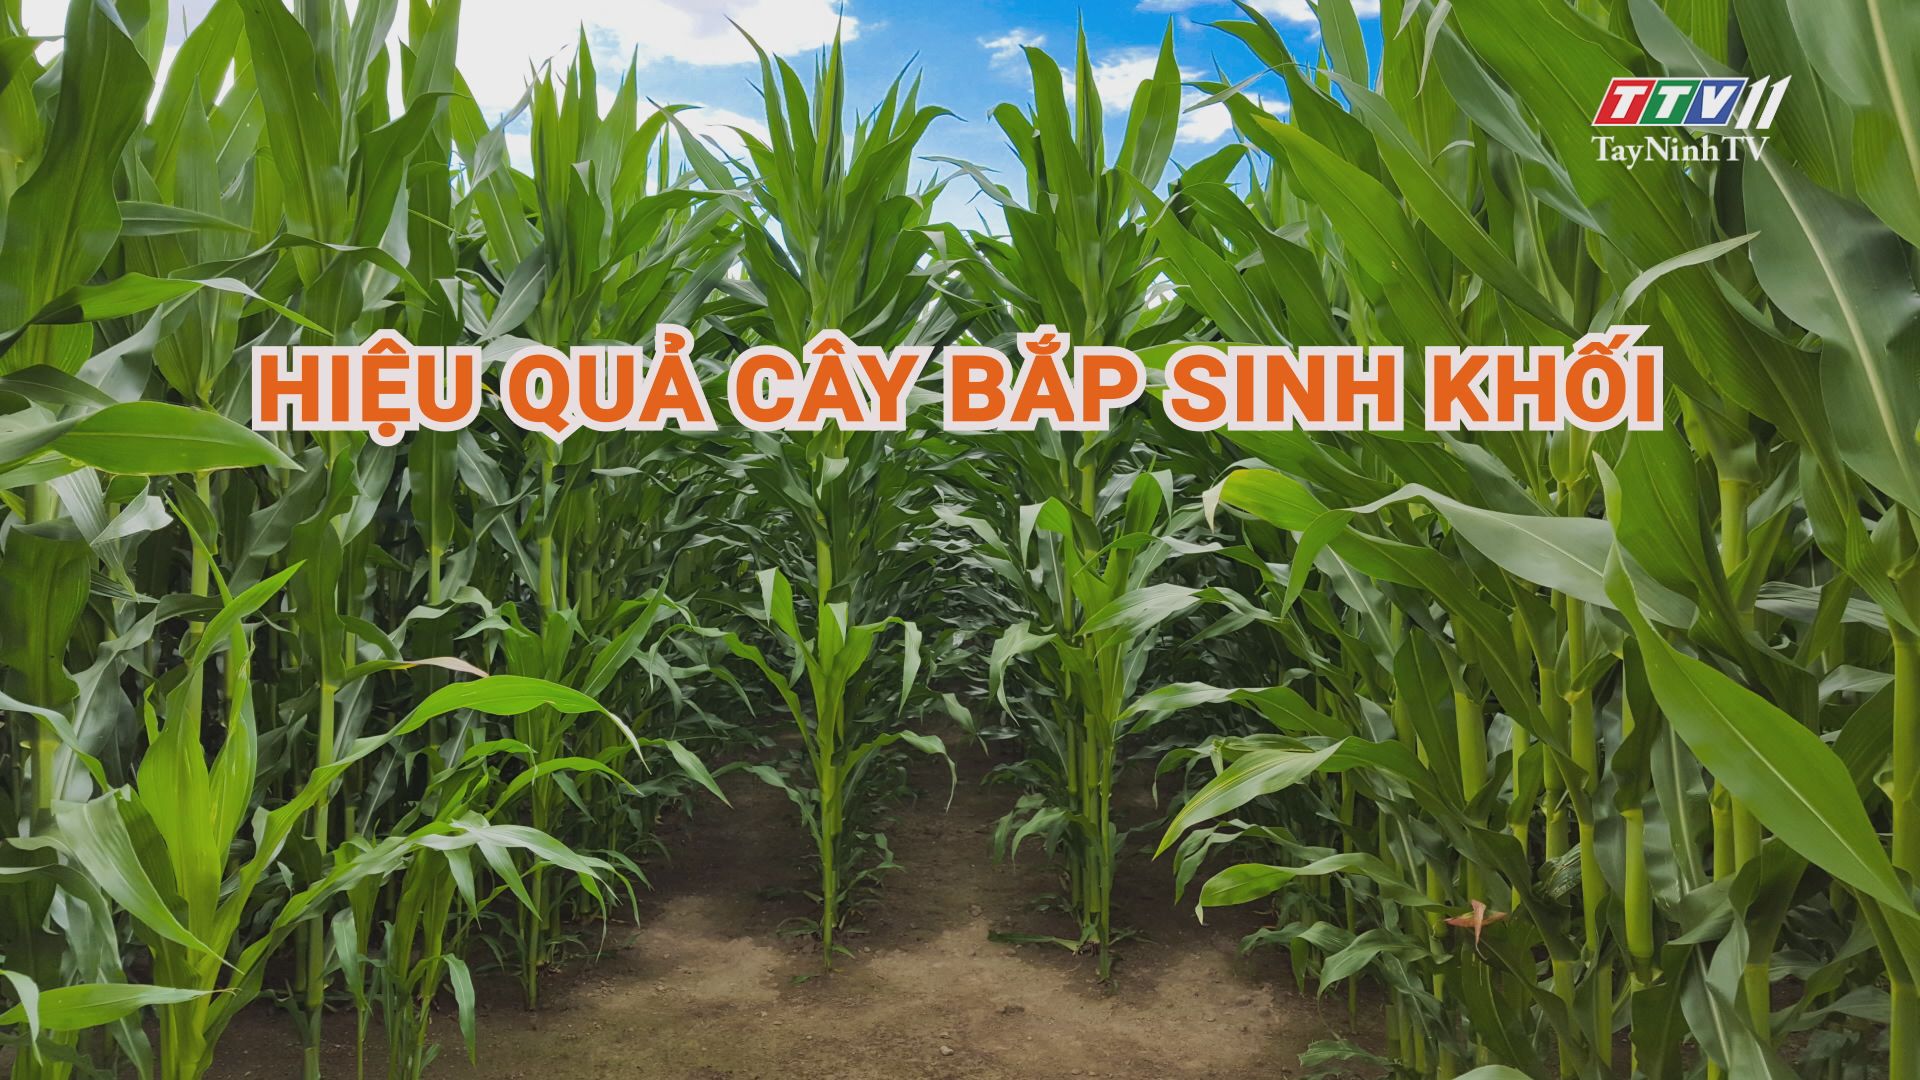 Hiệu quả cây bắp sinh khối | Nông nghiệp Tây Ninh | TayNinhTV